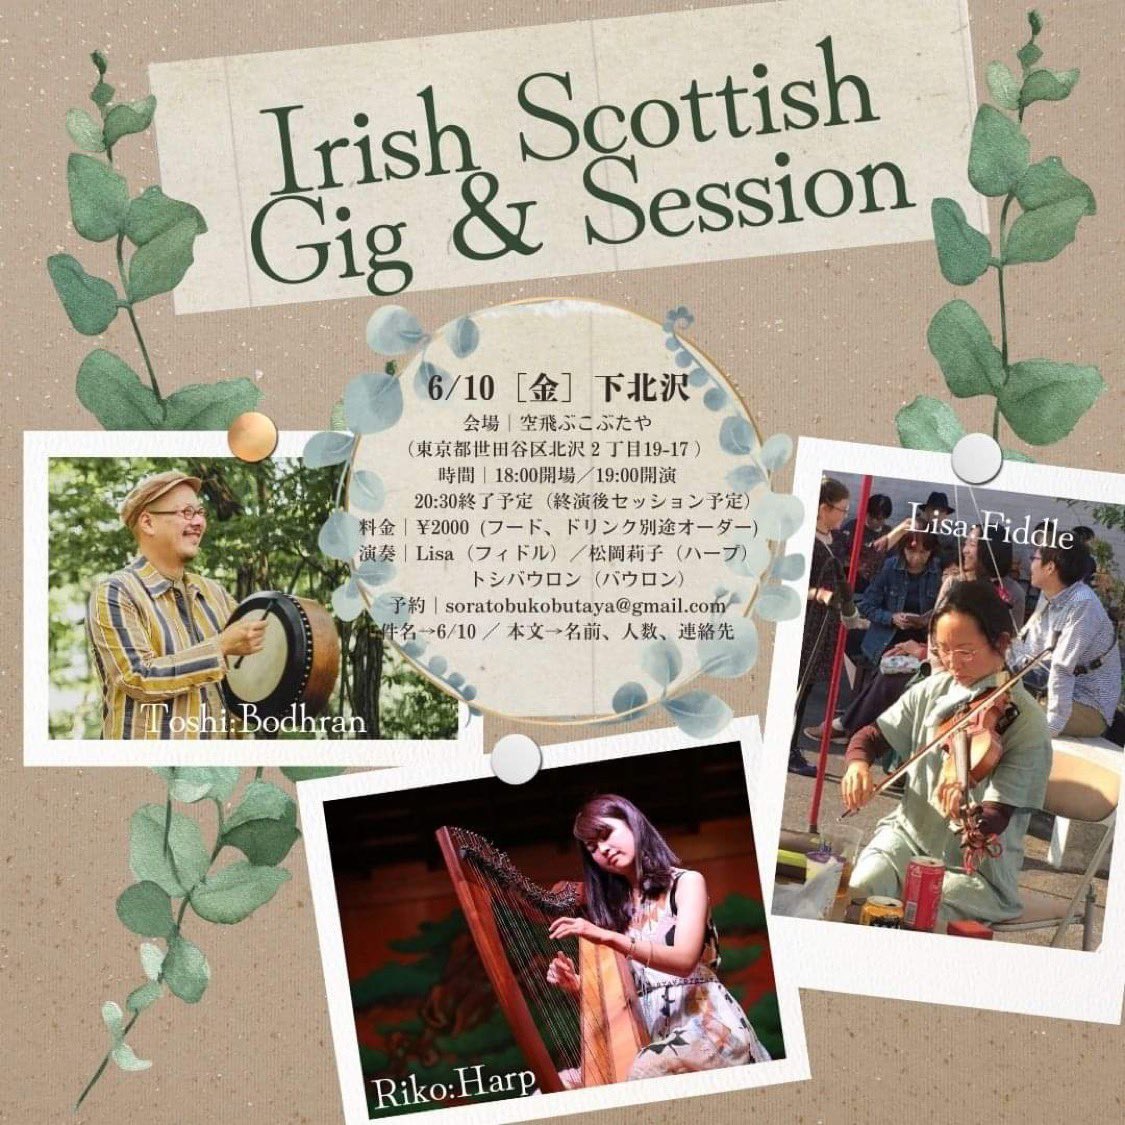 1ヶ月後ですが、東京・下北沢でこんな企画やります。

#アイリッシュミュージック 
#スコティッシュミュージック 
#celticmusic 
#irishmusic 
#scottishmusic 
#celticmusic